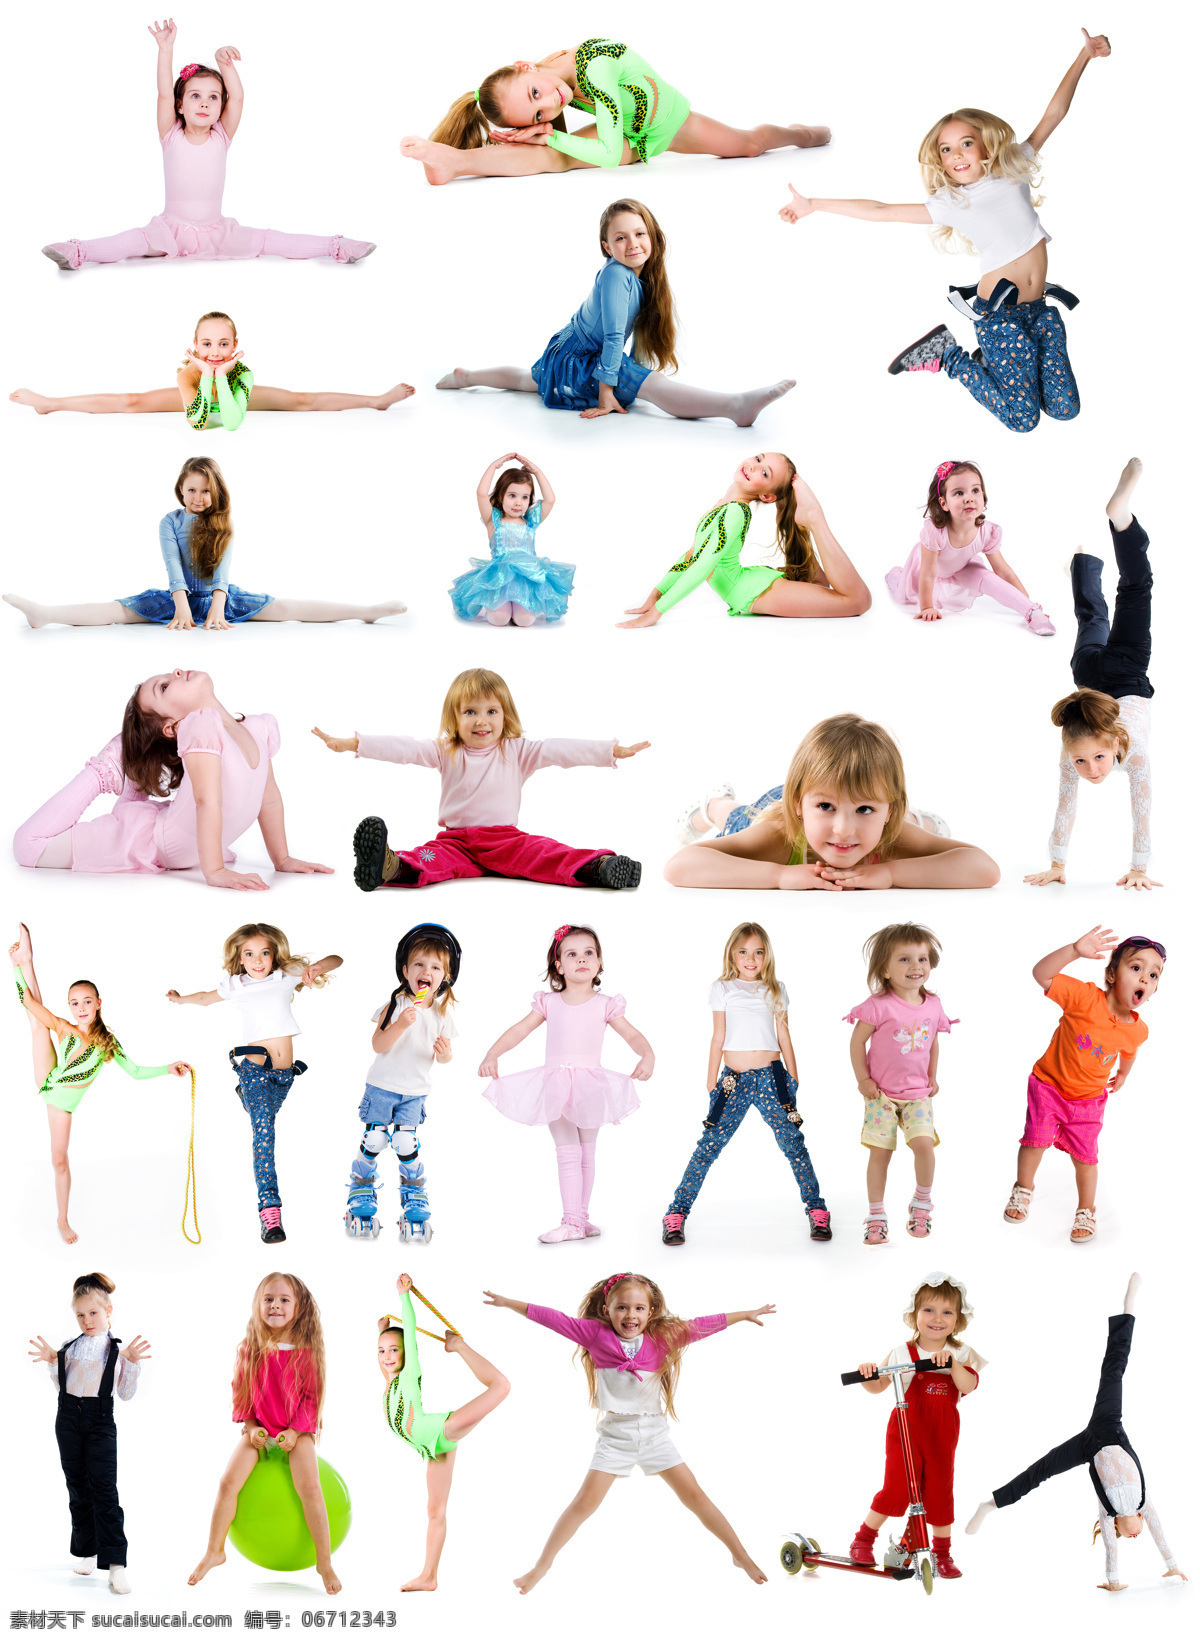 各位 运动 外国 可爱 儿童 外国儿童 女孩 幼儿园 裙子 教育 舞蹈 体育运动 跳跃 玩耍 滑板 童装 时尚 微笑 开心 快乐 天真活泼 摄影图 高清图片 儿童图片 人物图片